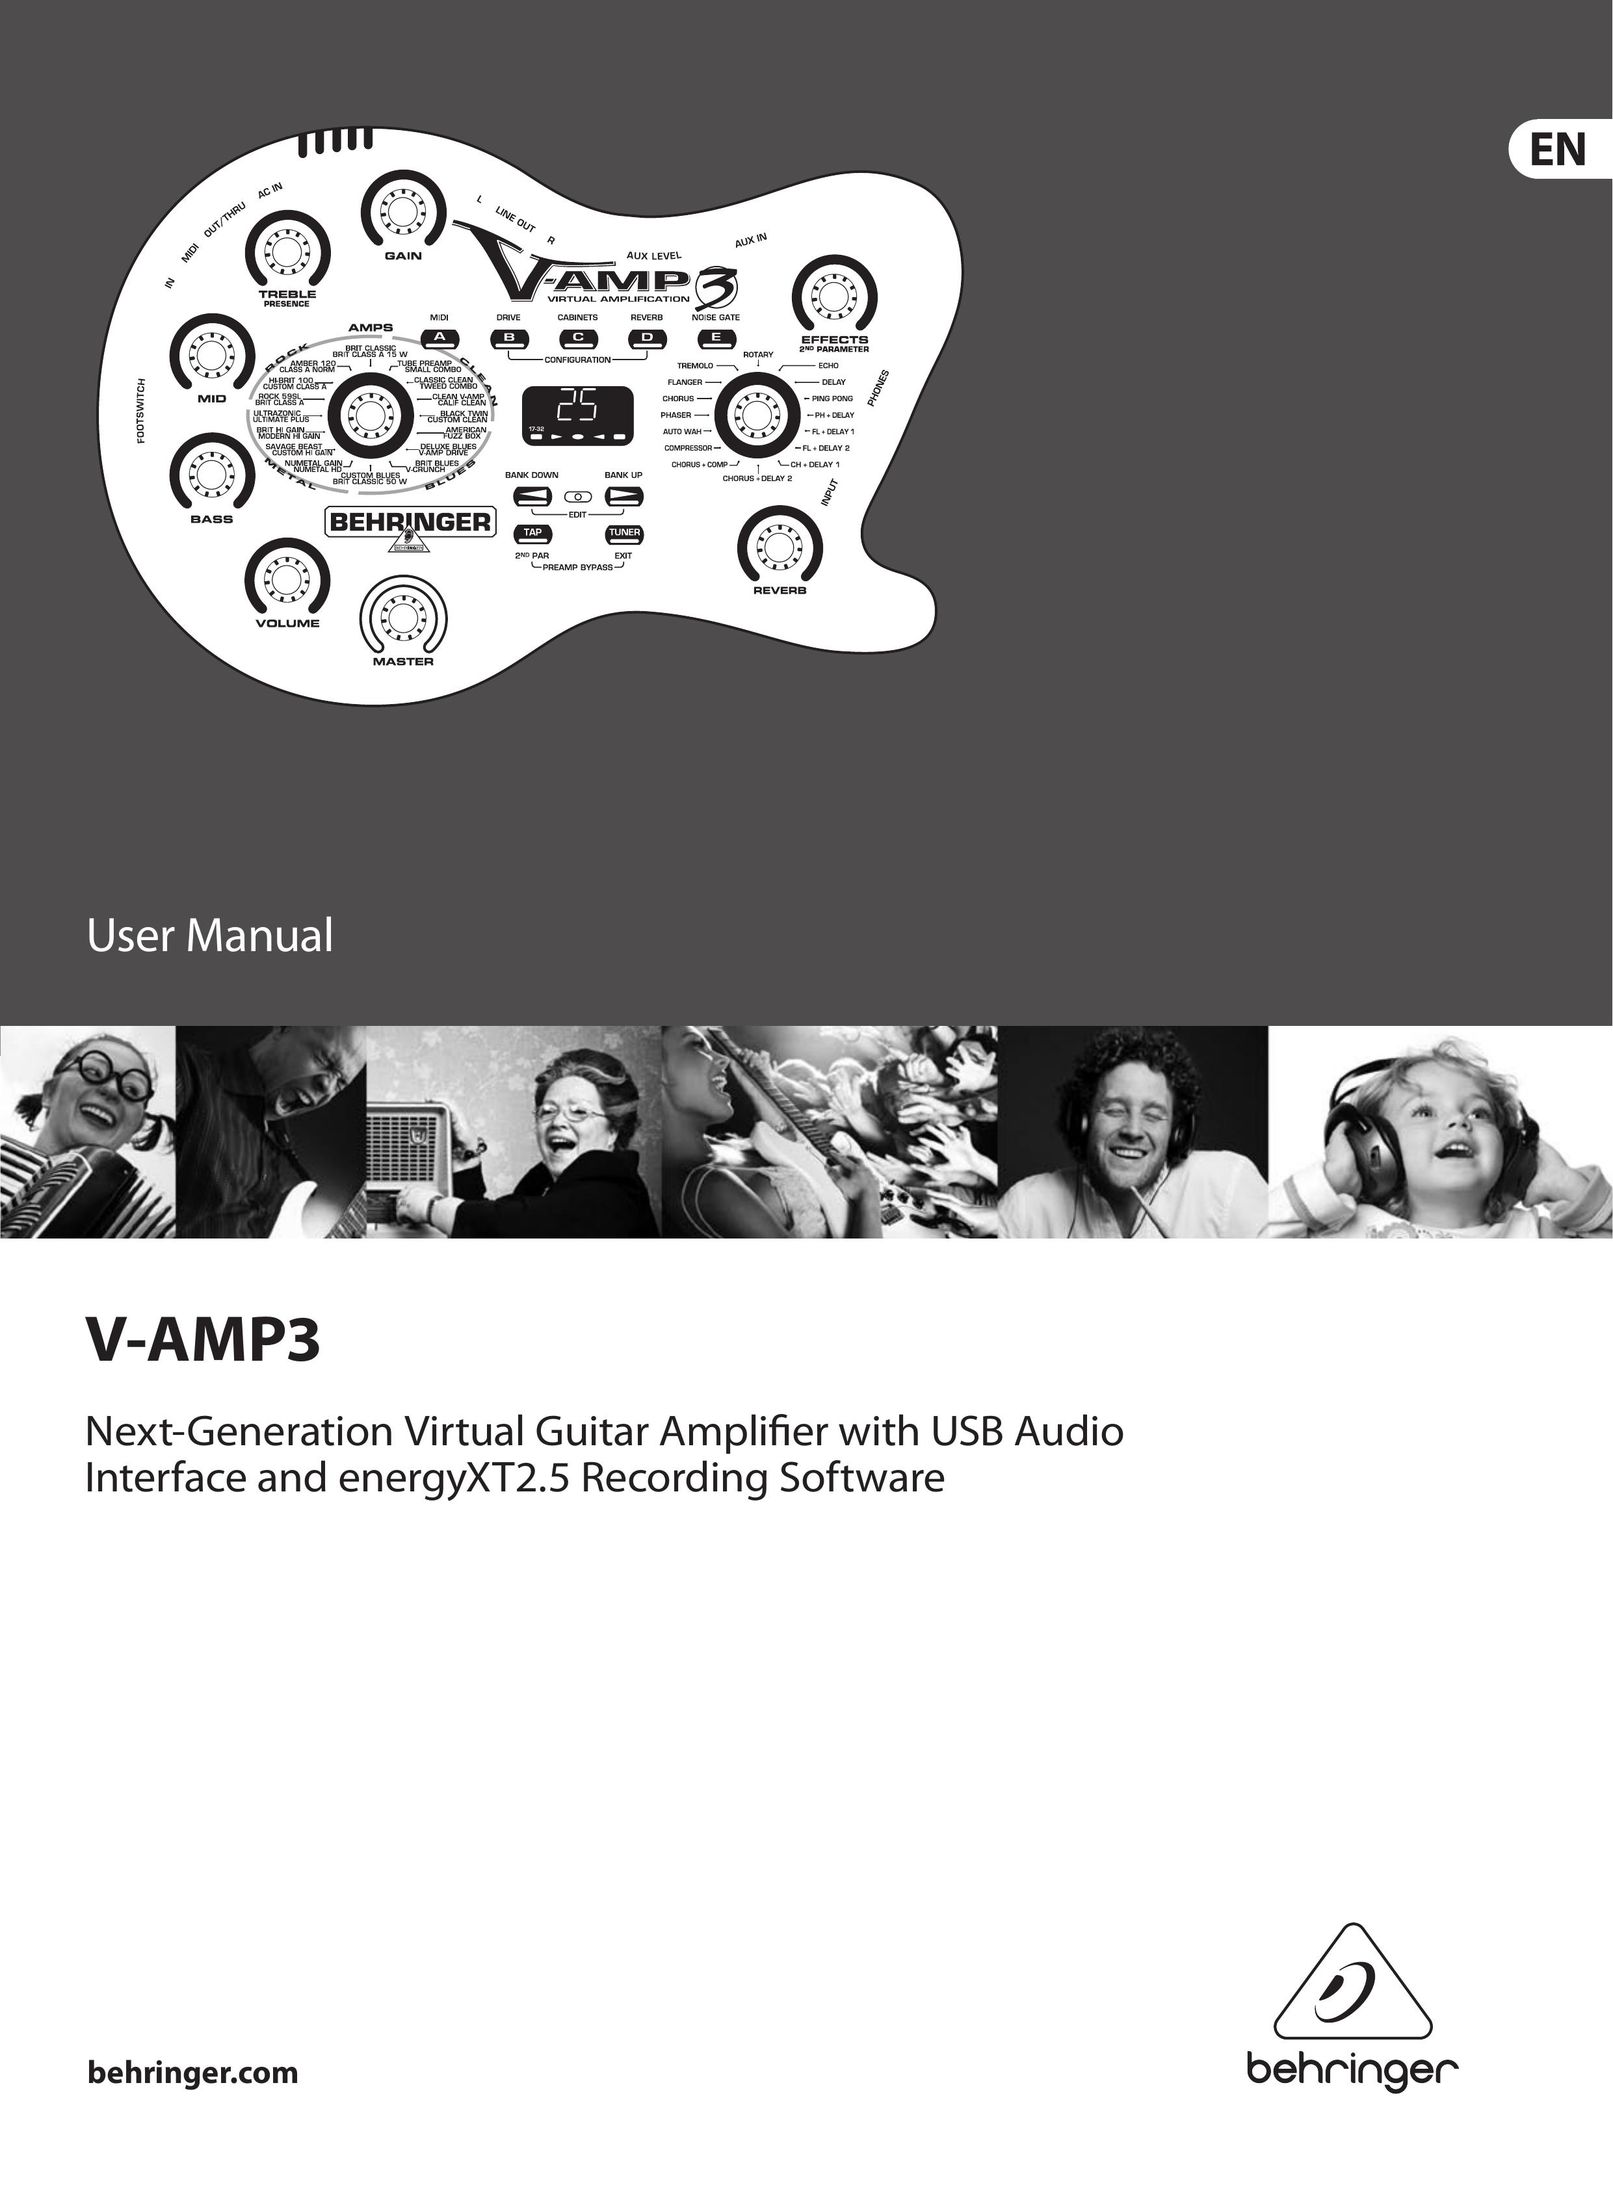 Behringer V-Amp3 Car Amplifier User Manual